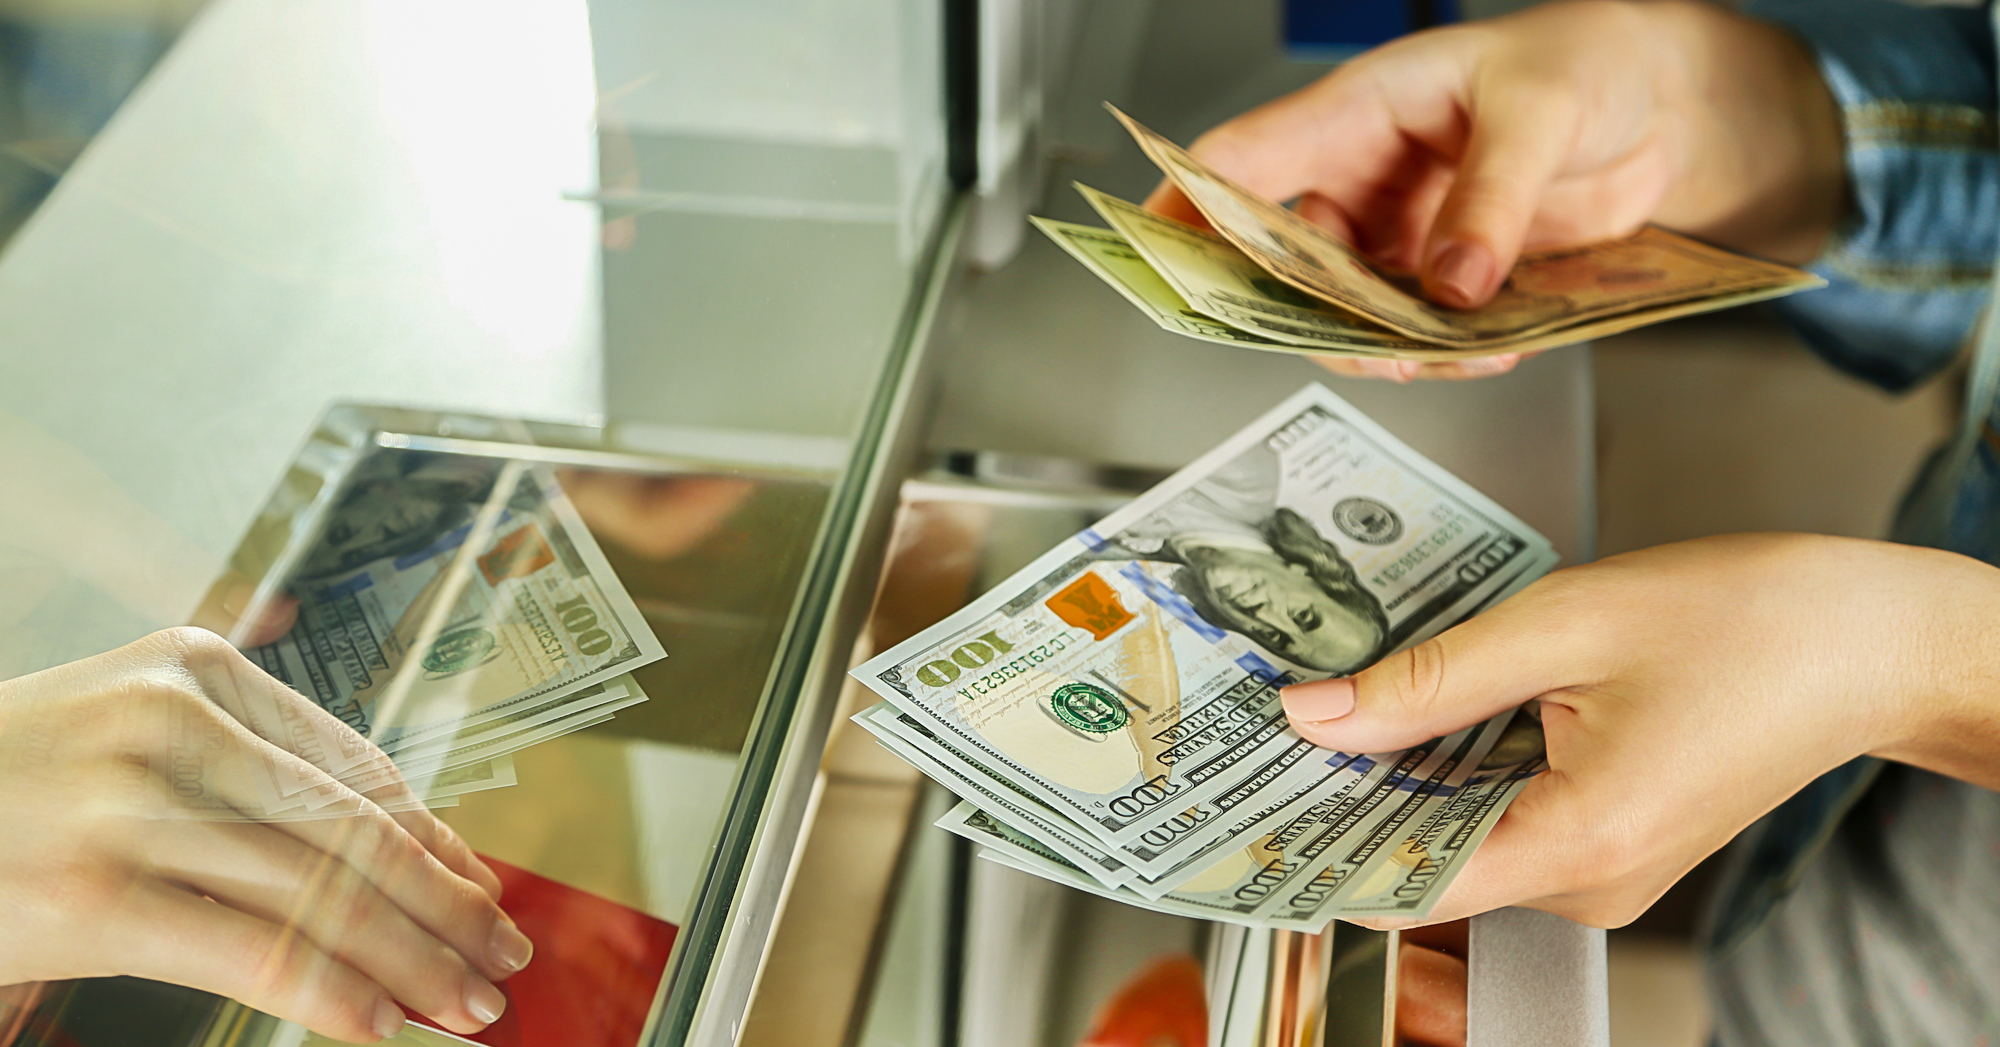 Обмен валюты рубль манат майнер встроить в сайт